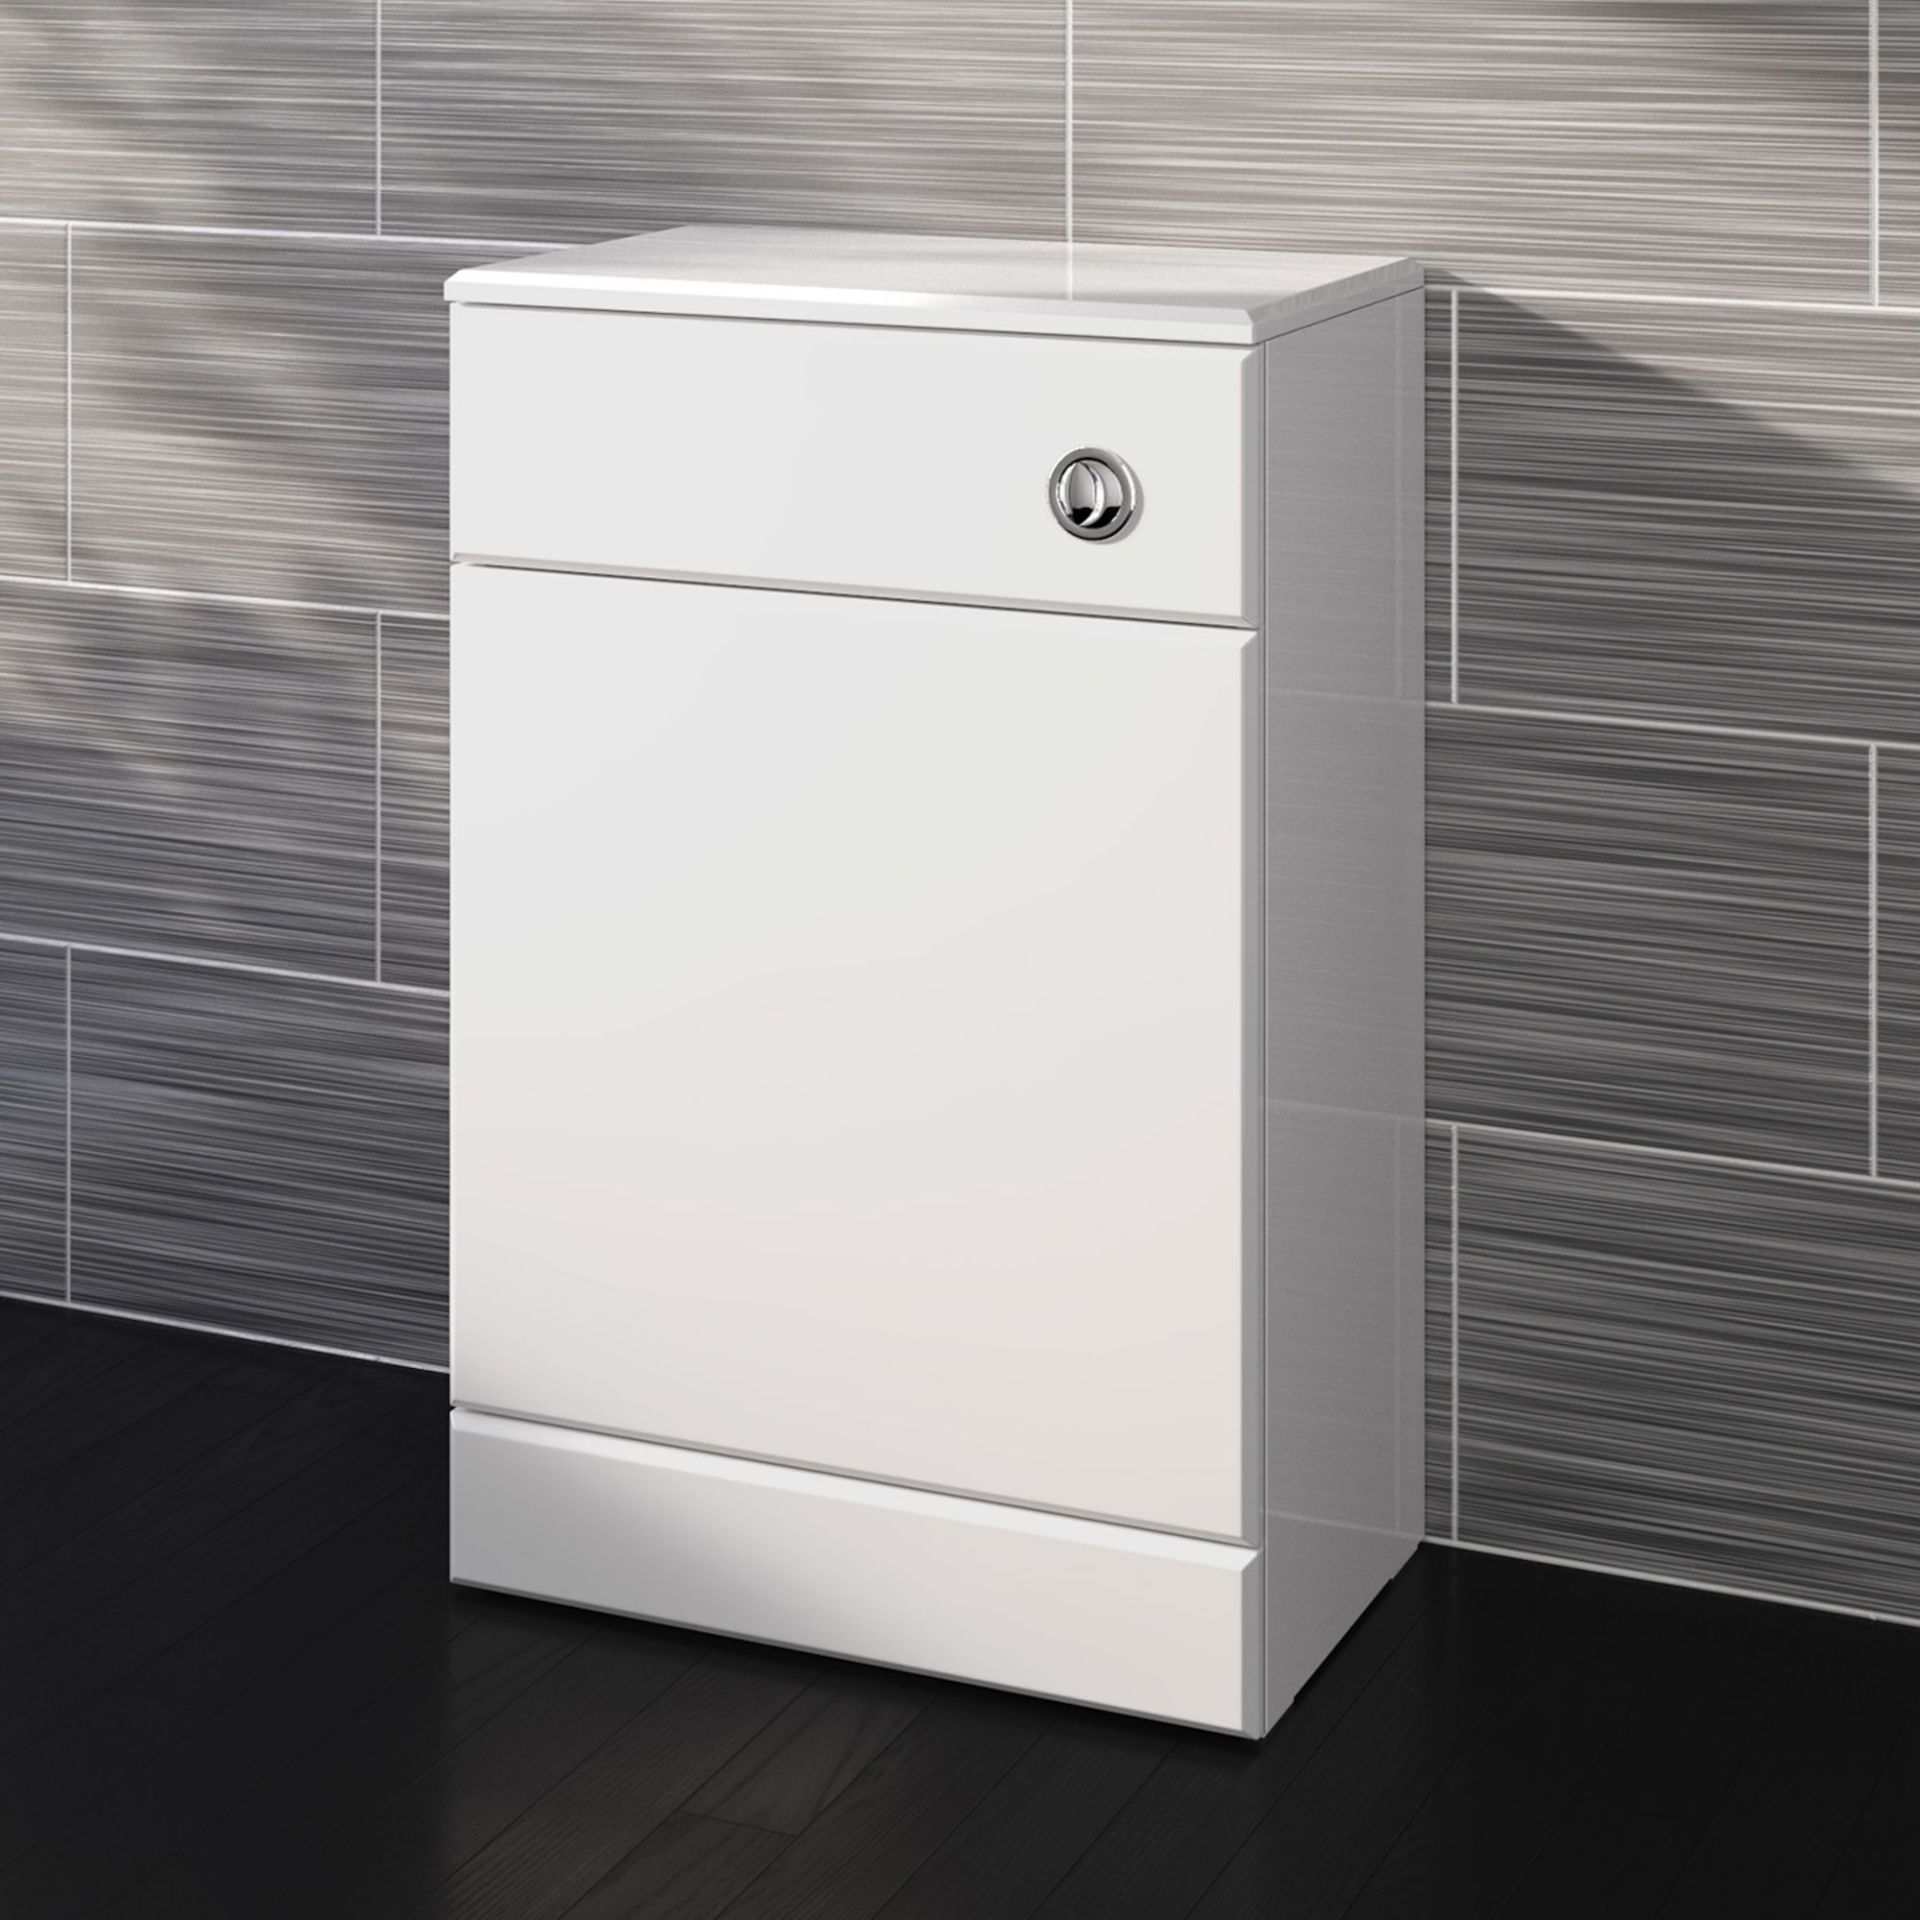 (PT13) 500x300mm Quartz Gloss White Back To Wall Toilet Unit. Pristine gloss white finish Conceals